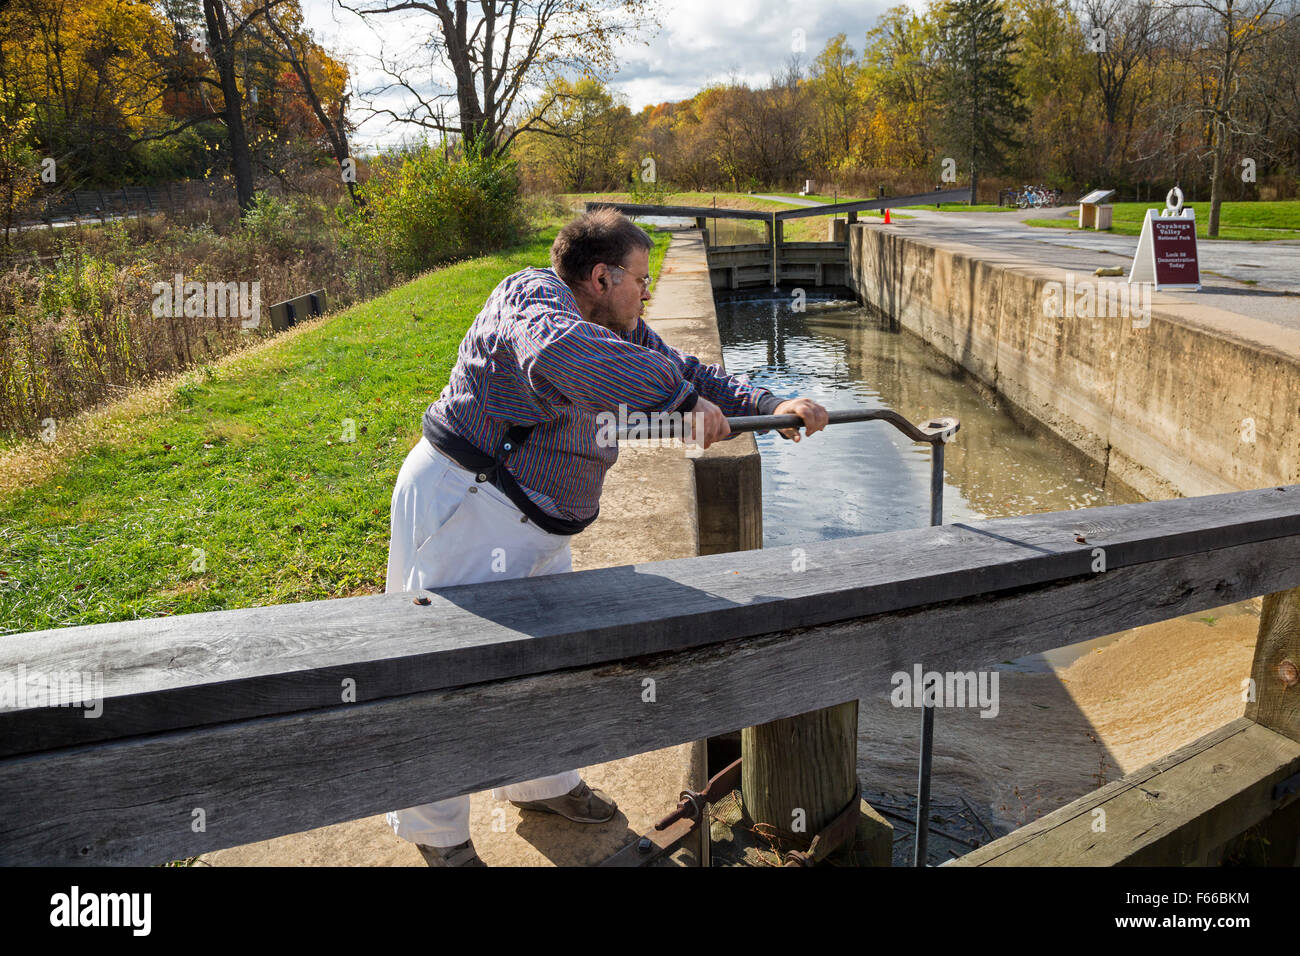 Cuyahoga Valley National Park, Ohio - ein Park Freiwilligen zeigt eine Pforte zu lassen, Wasser aus einer Schleuse öffnen. Stockfoto